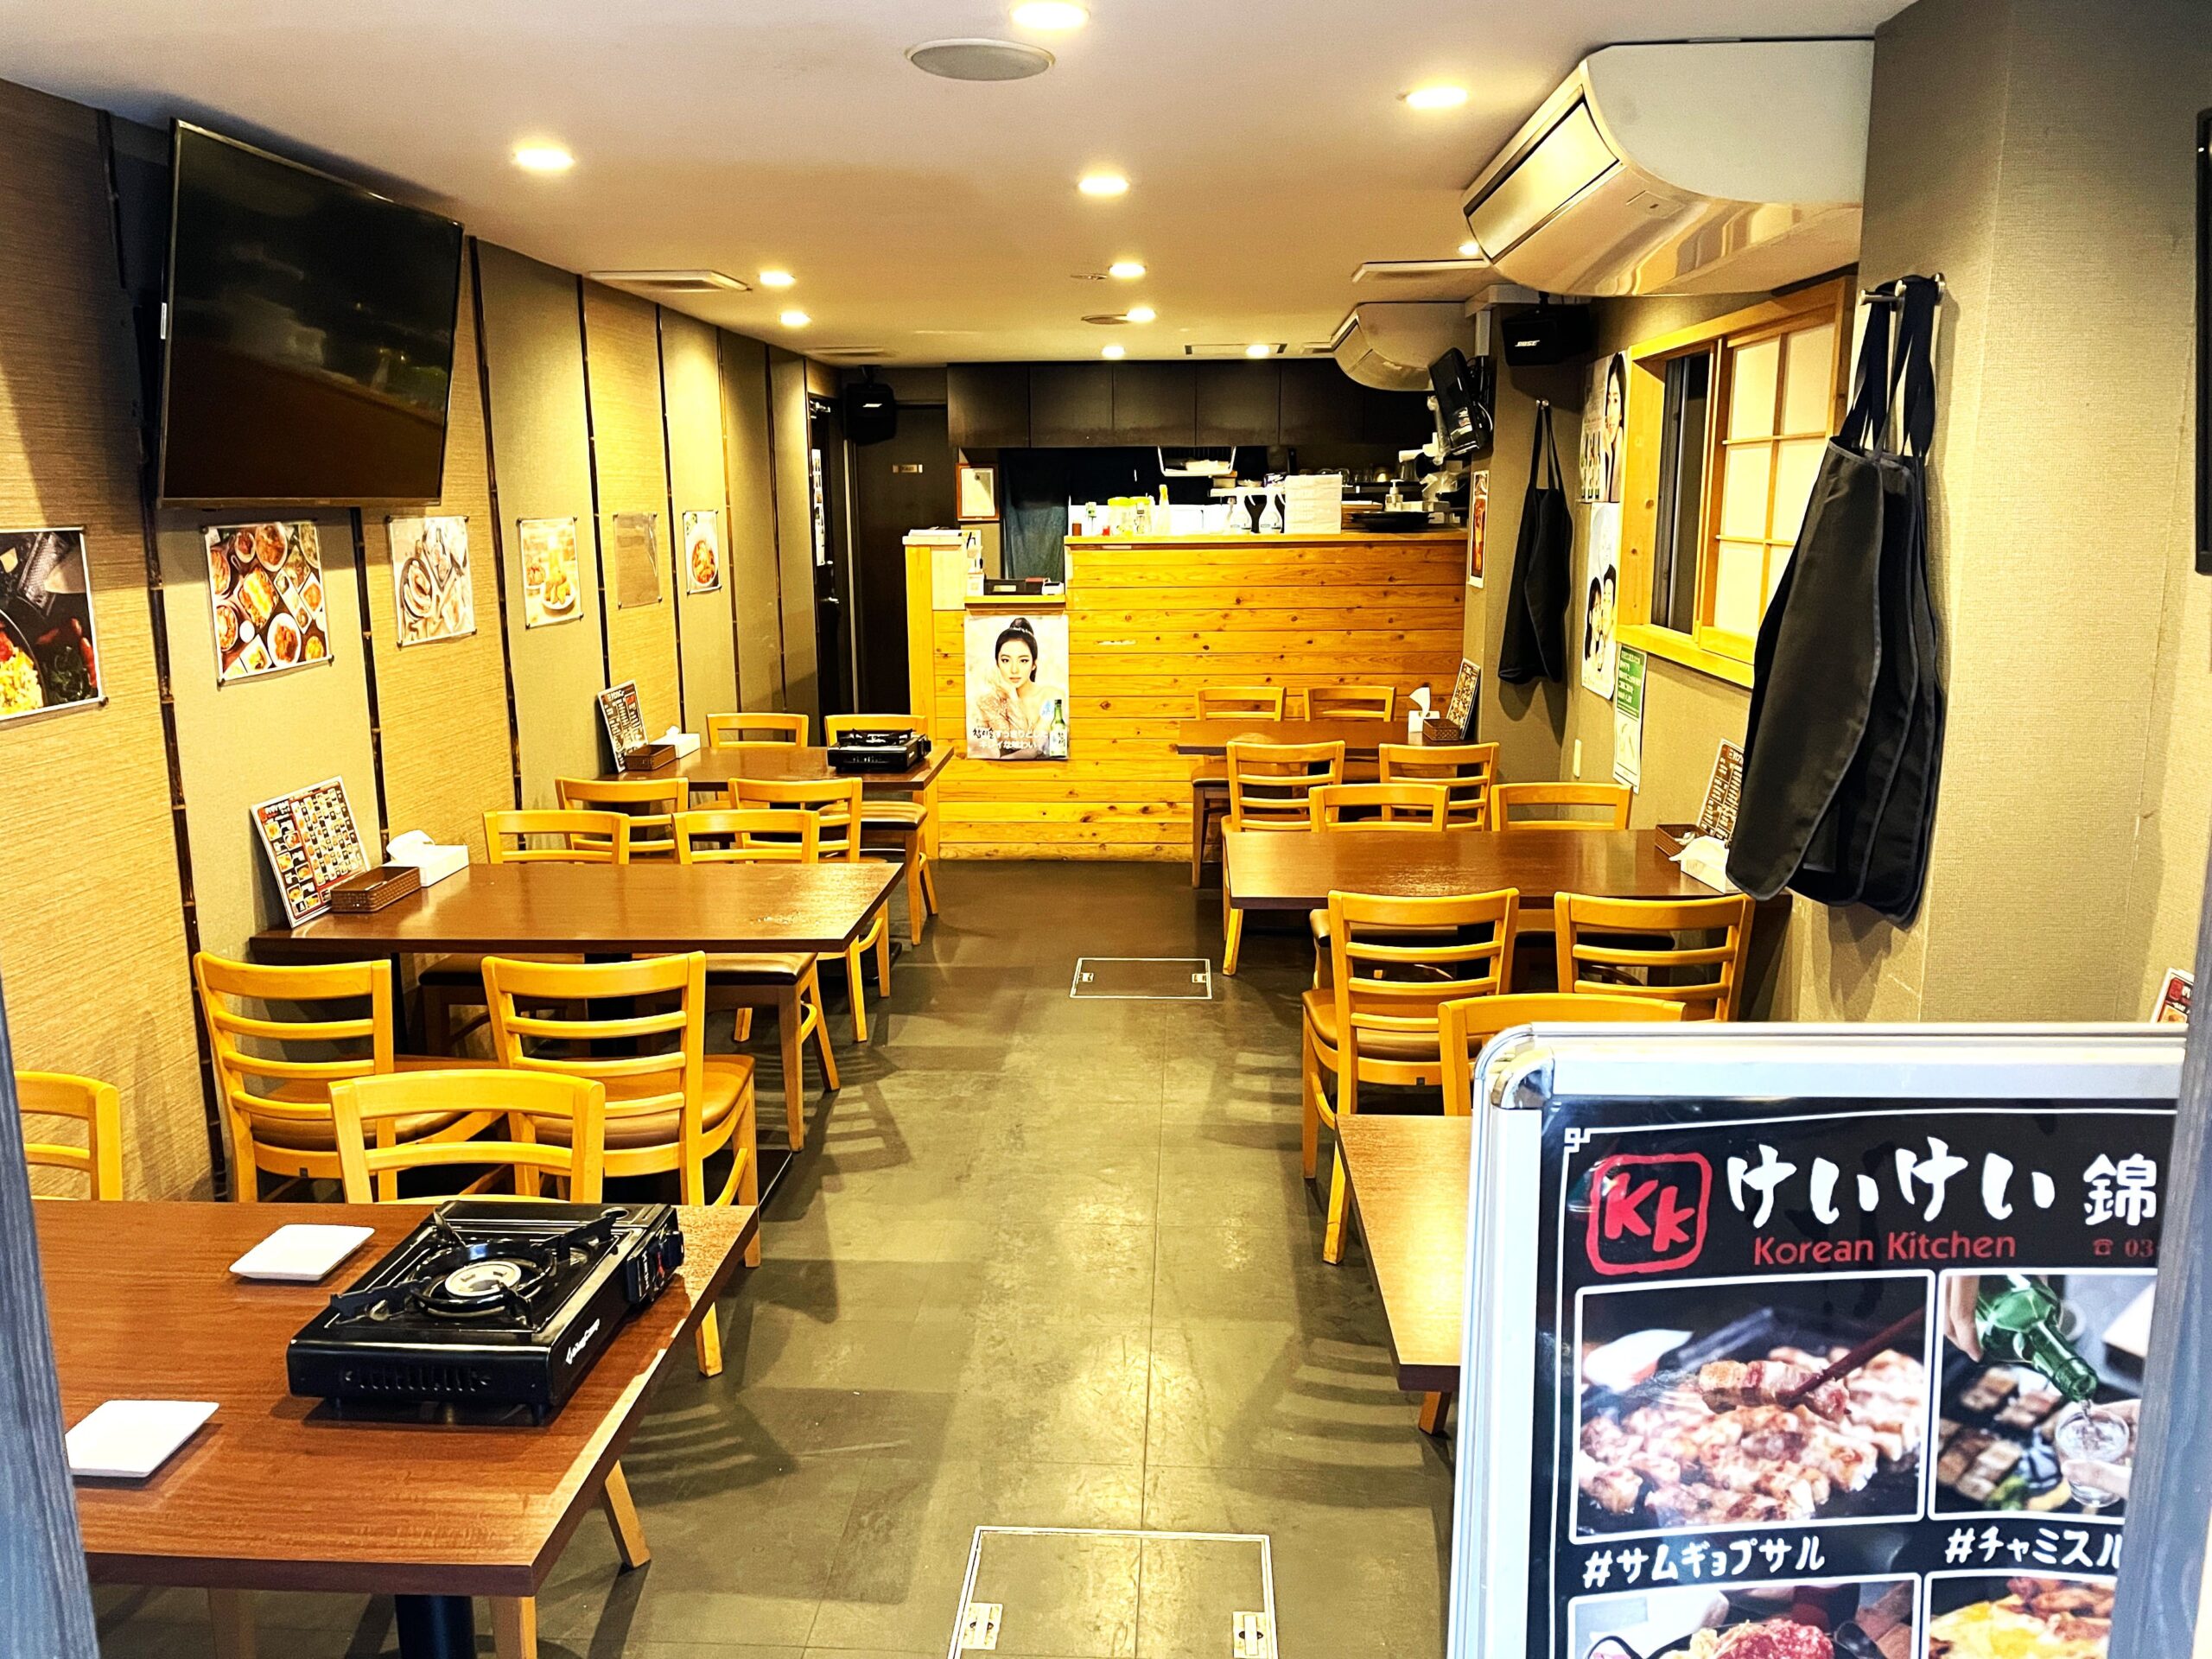 墨田区「錦糸町」駅徒歩4分、1階路面居抜きで飲食店開業できる